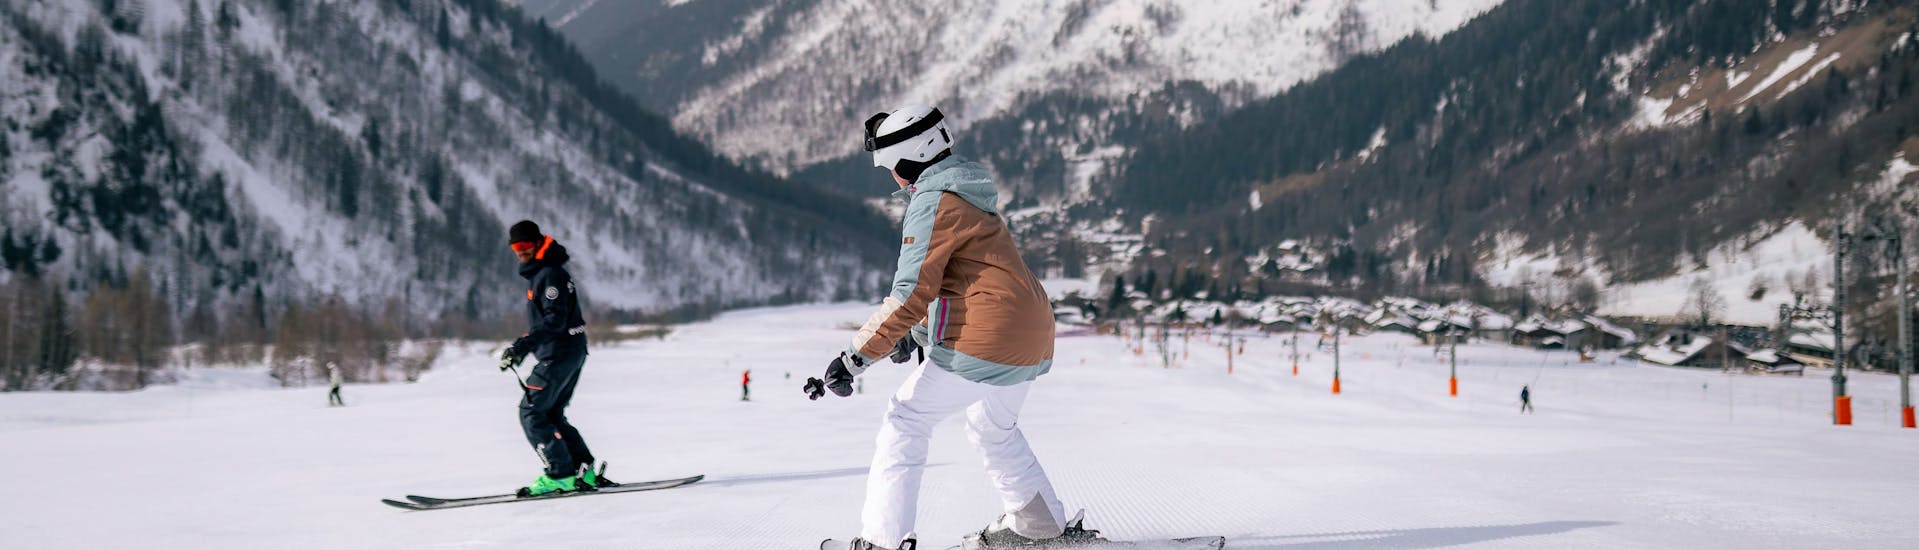 Clases de esquí para adultos (desde 13 años) en Chamonix/Savoy - 4 días (dom.-mi.).